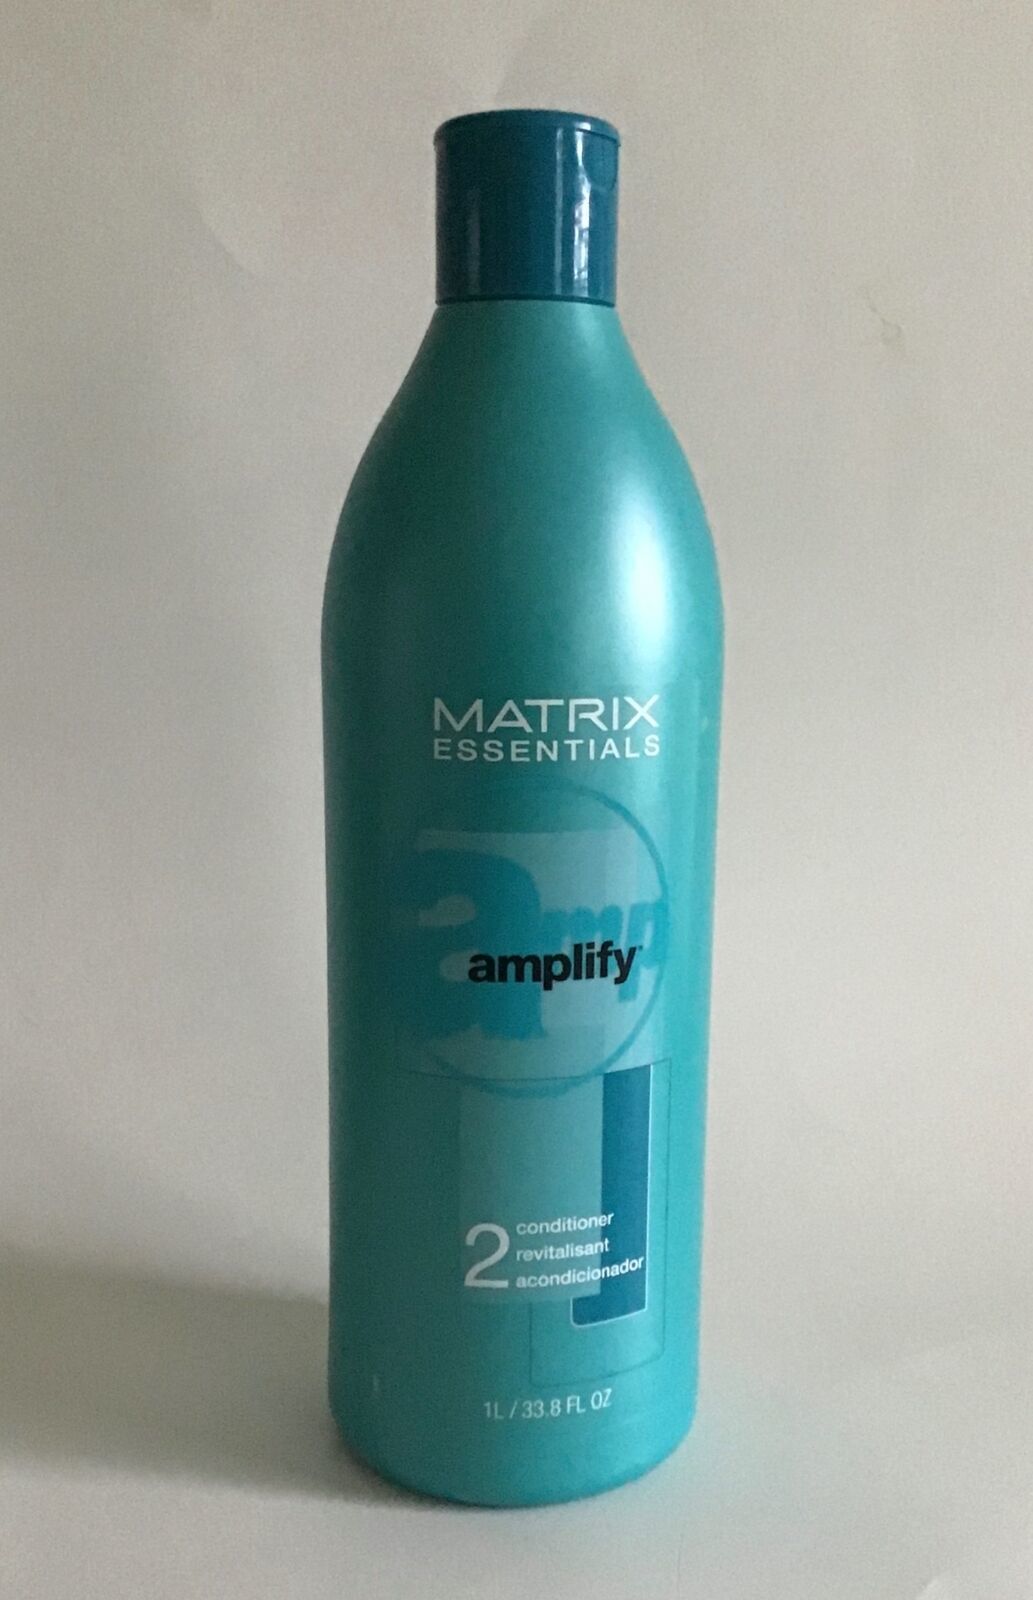 NEW Matrix Essentials Amplify 2 Conditioner, 33.8 fl. oz. (1 L) - $14.95